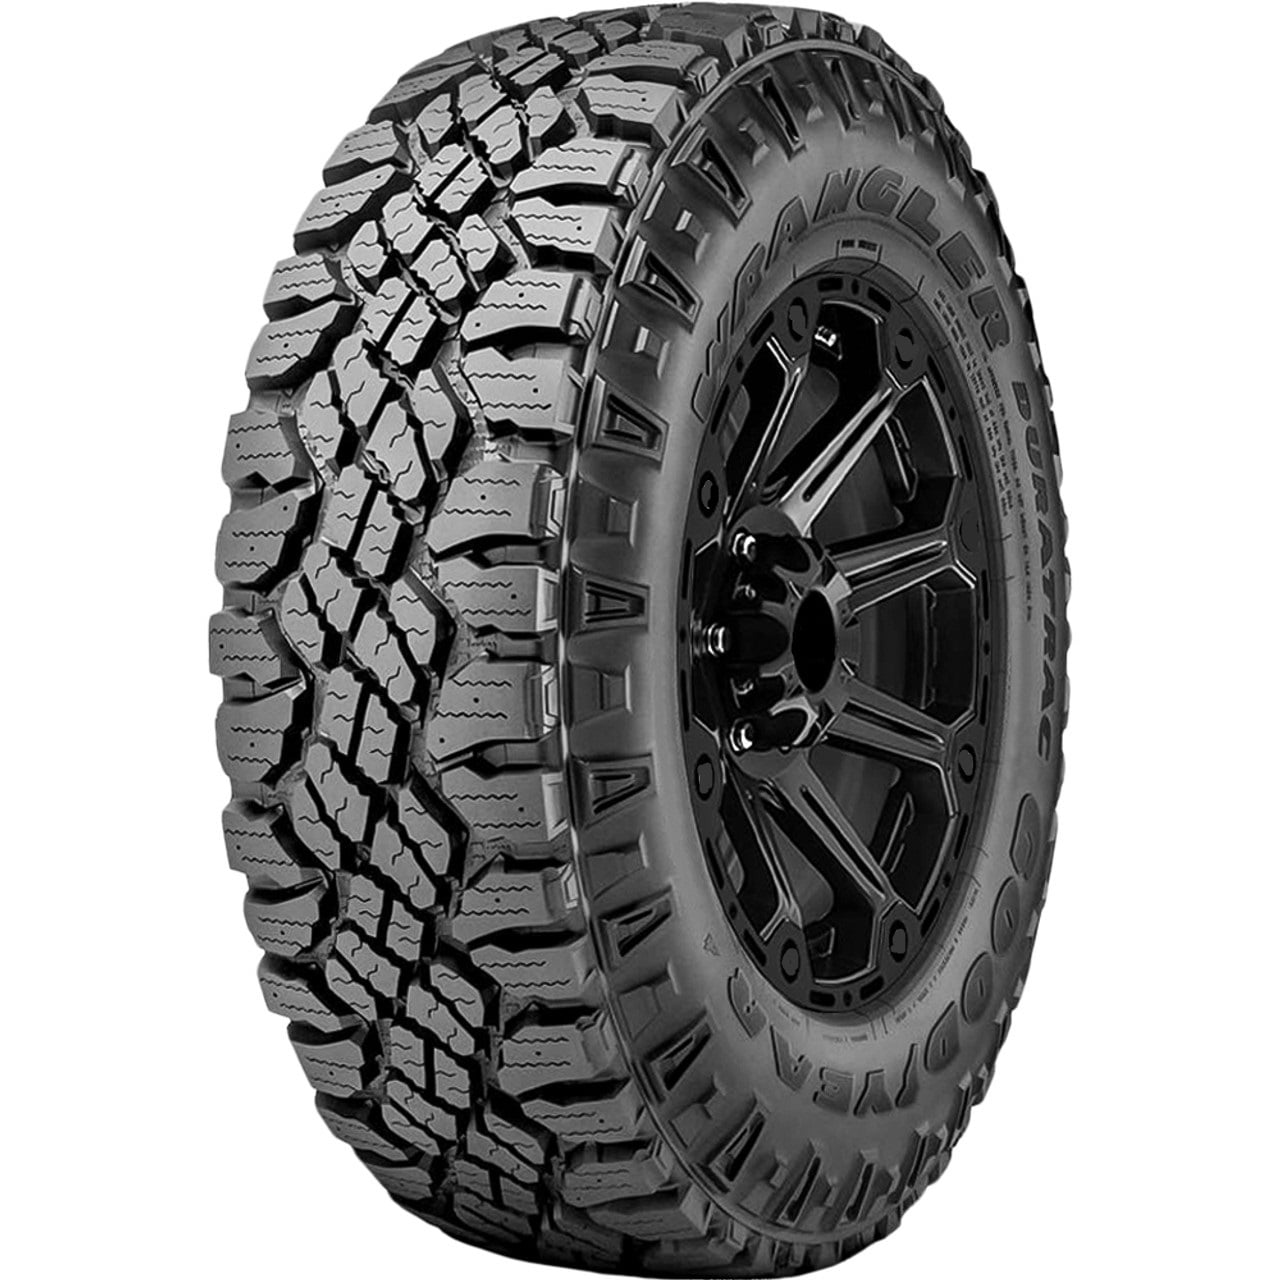 2 New Goodyear Wrangler DuraTrac All-Terrain Tires - LT305/55R20 10PLY -  